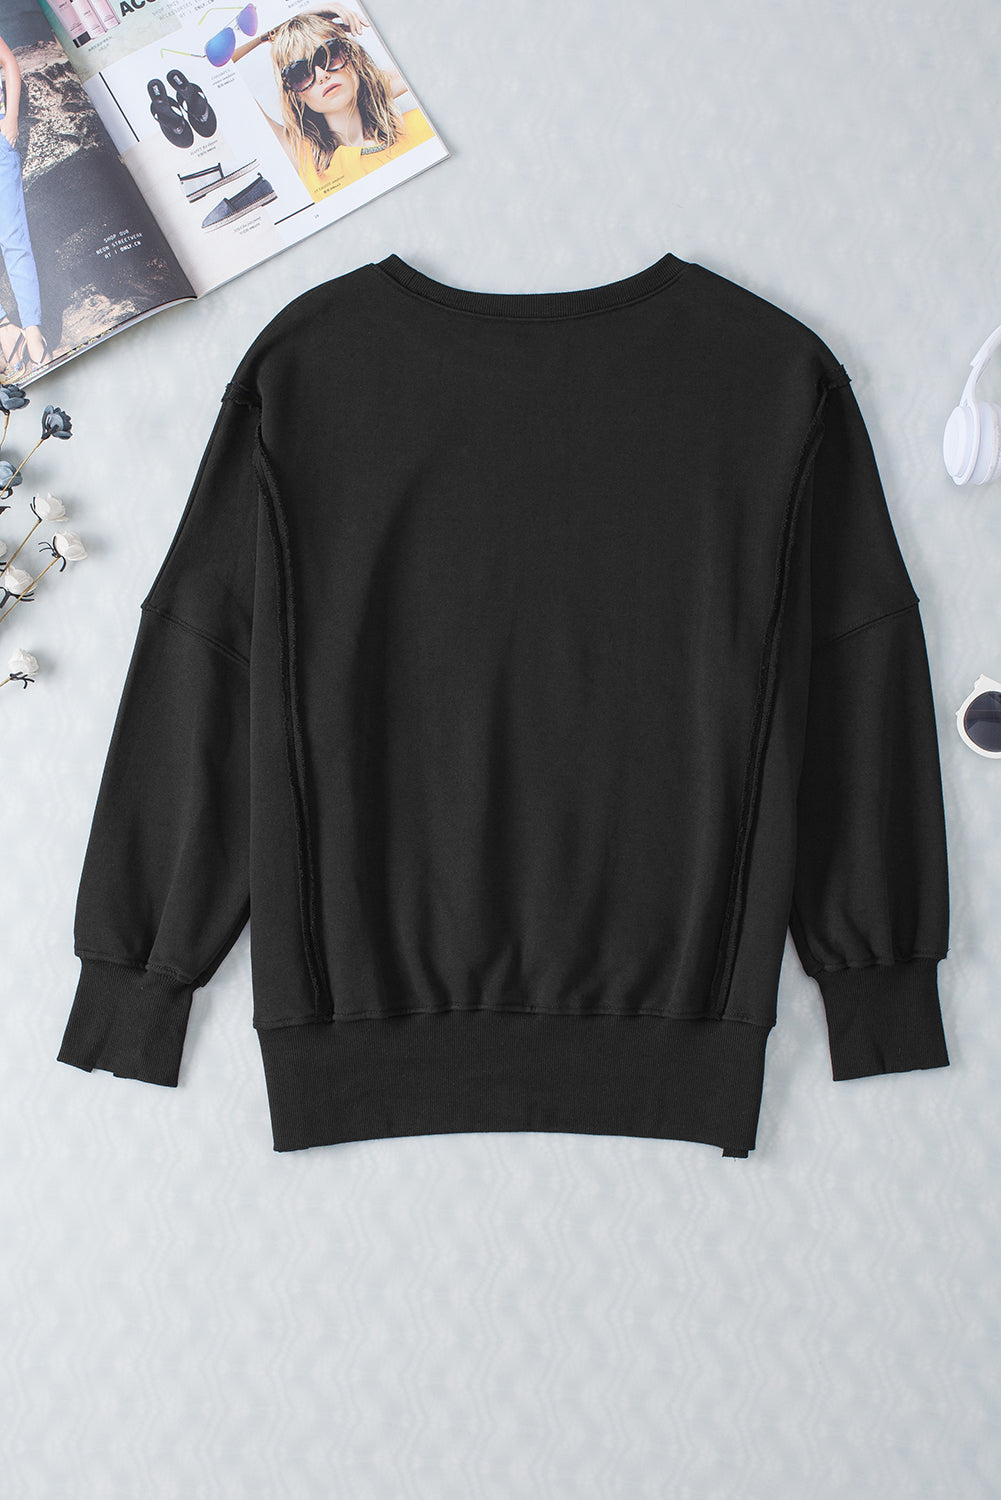 Sweat-shirt noir à coutures apparentes, épaules tombantes, fente, ourlet haut et bas